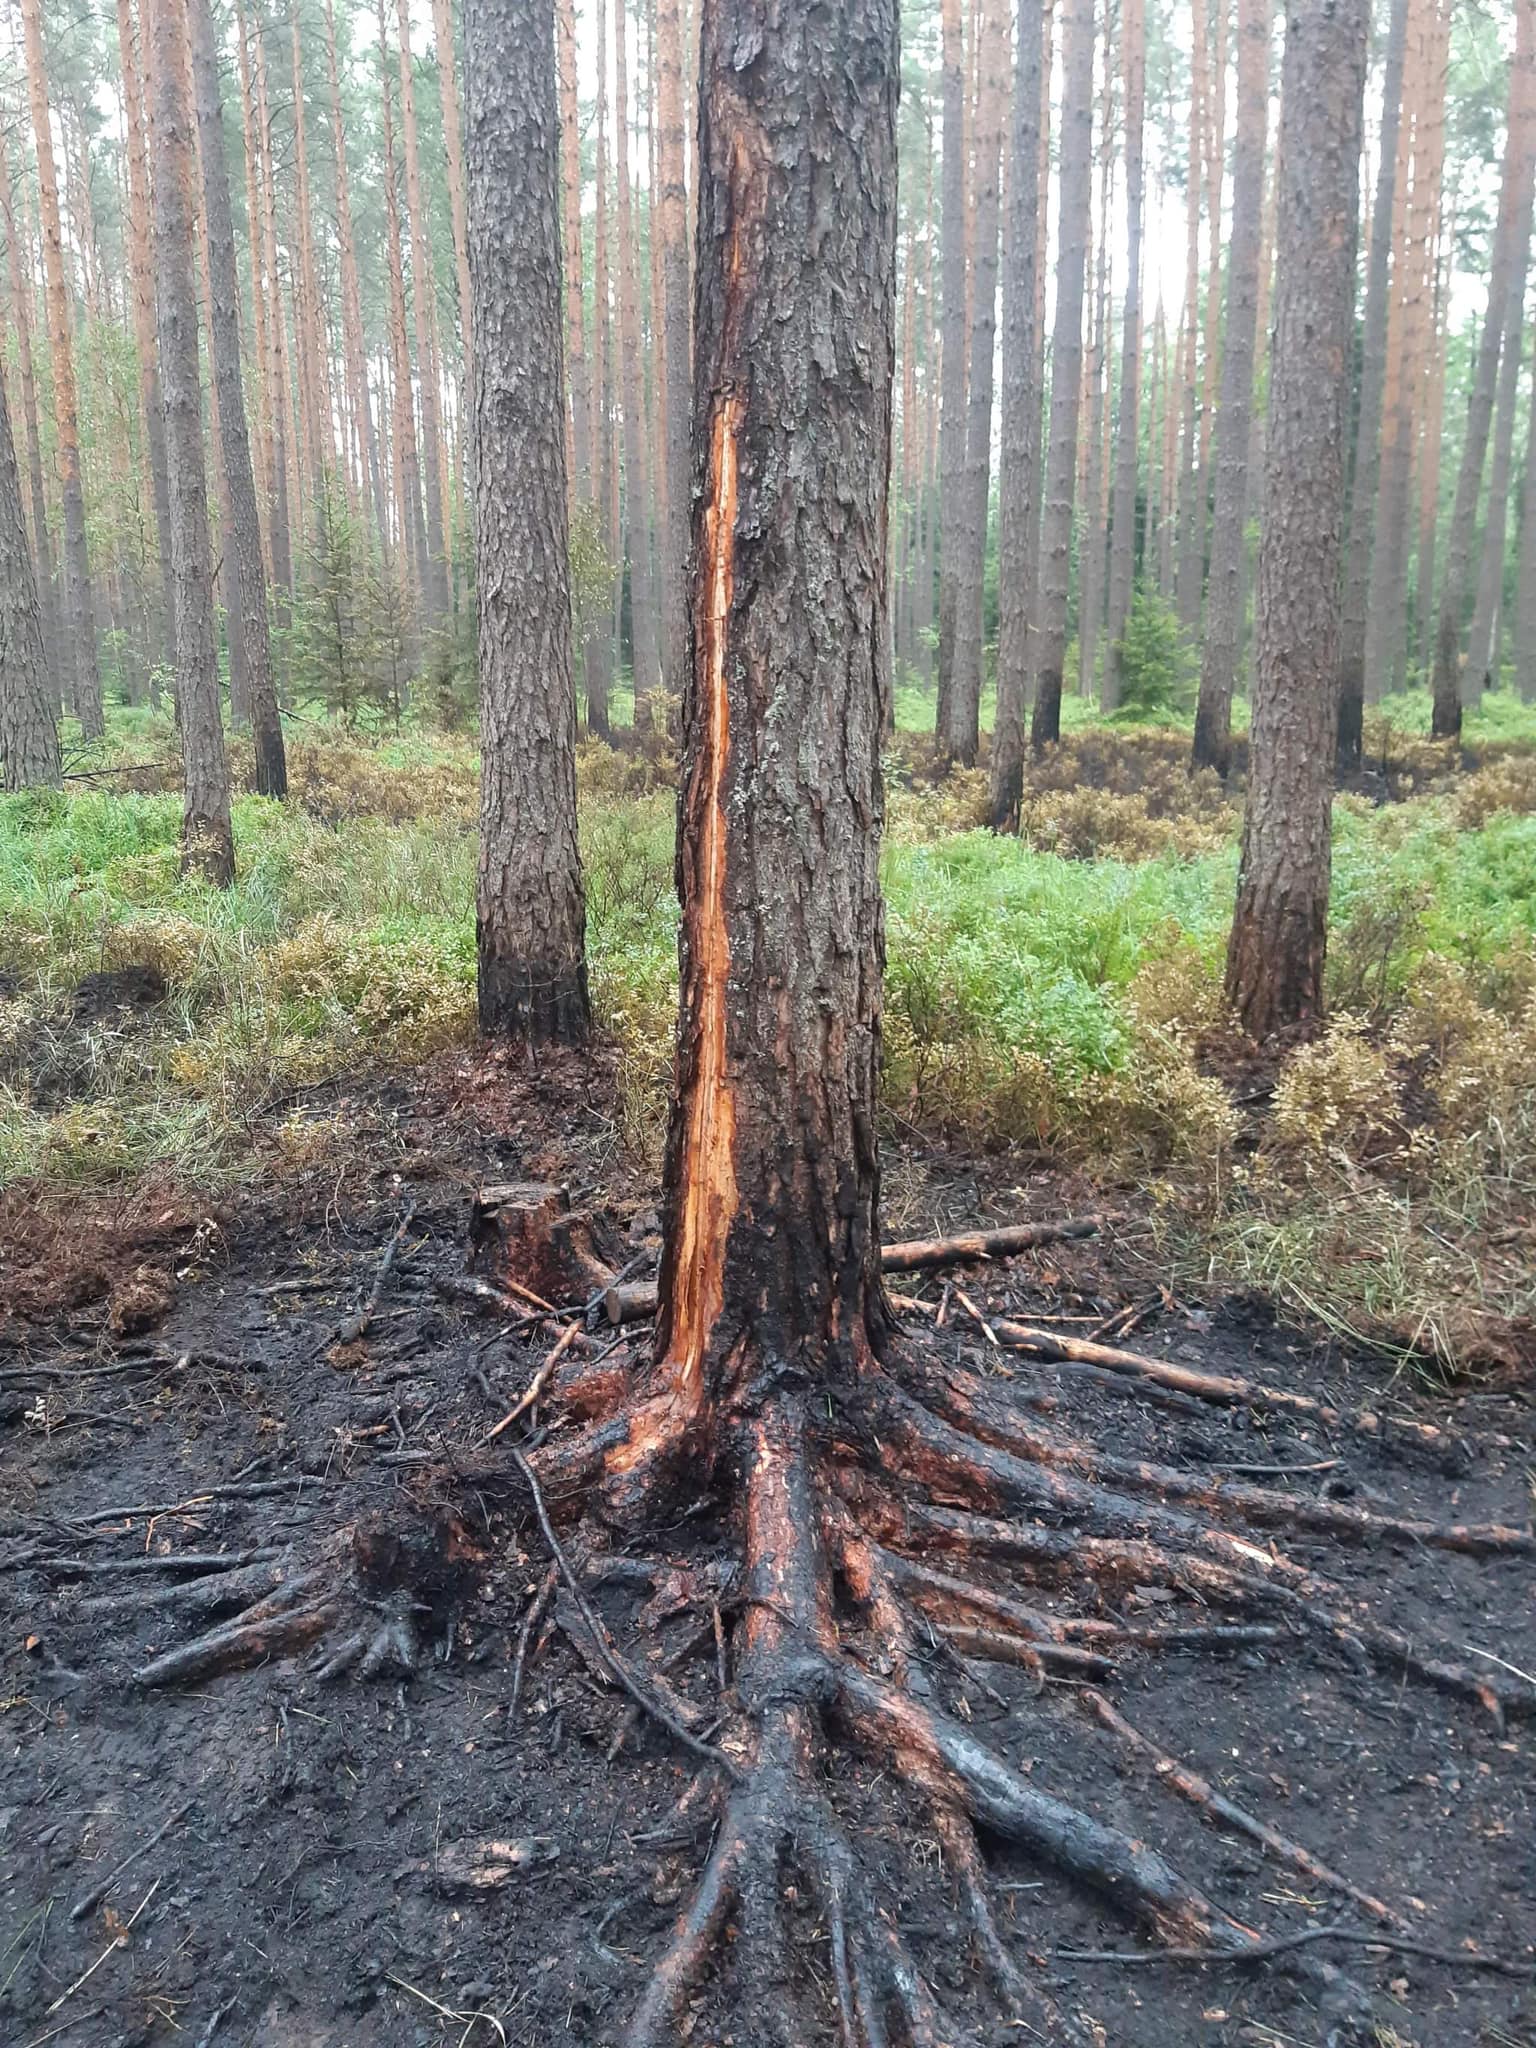 Piorun uderzył w drzewo, w lesie pojawił się pożar (zdjęcia)